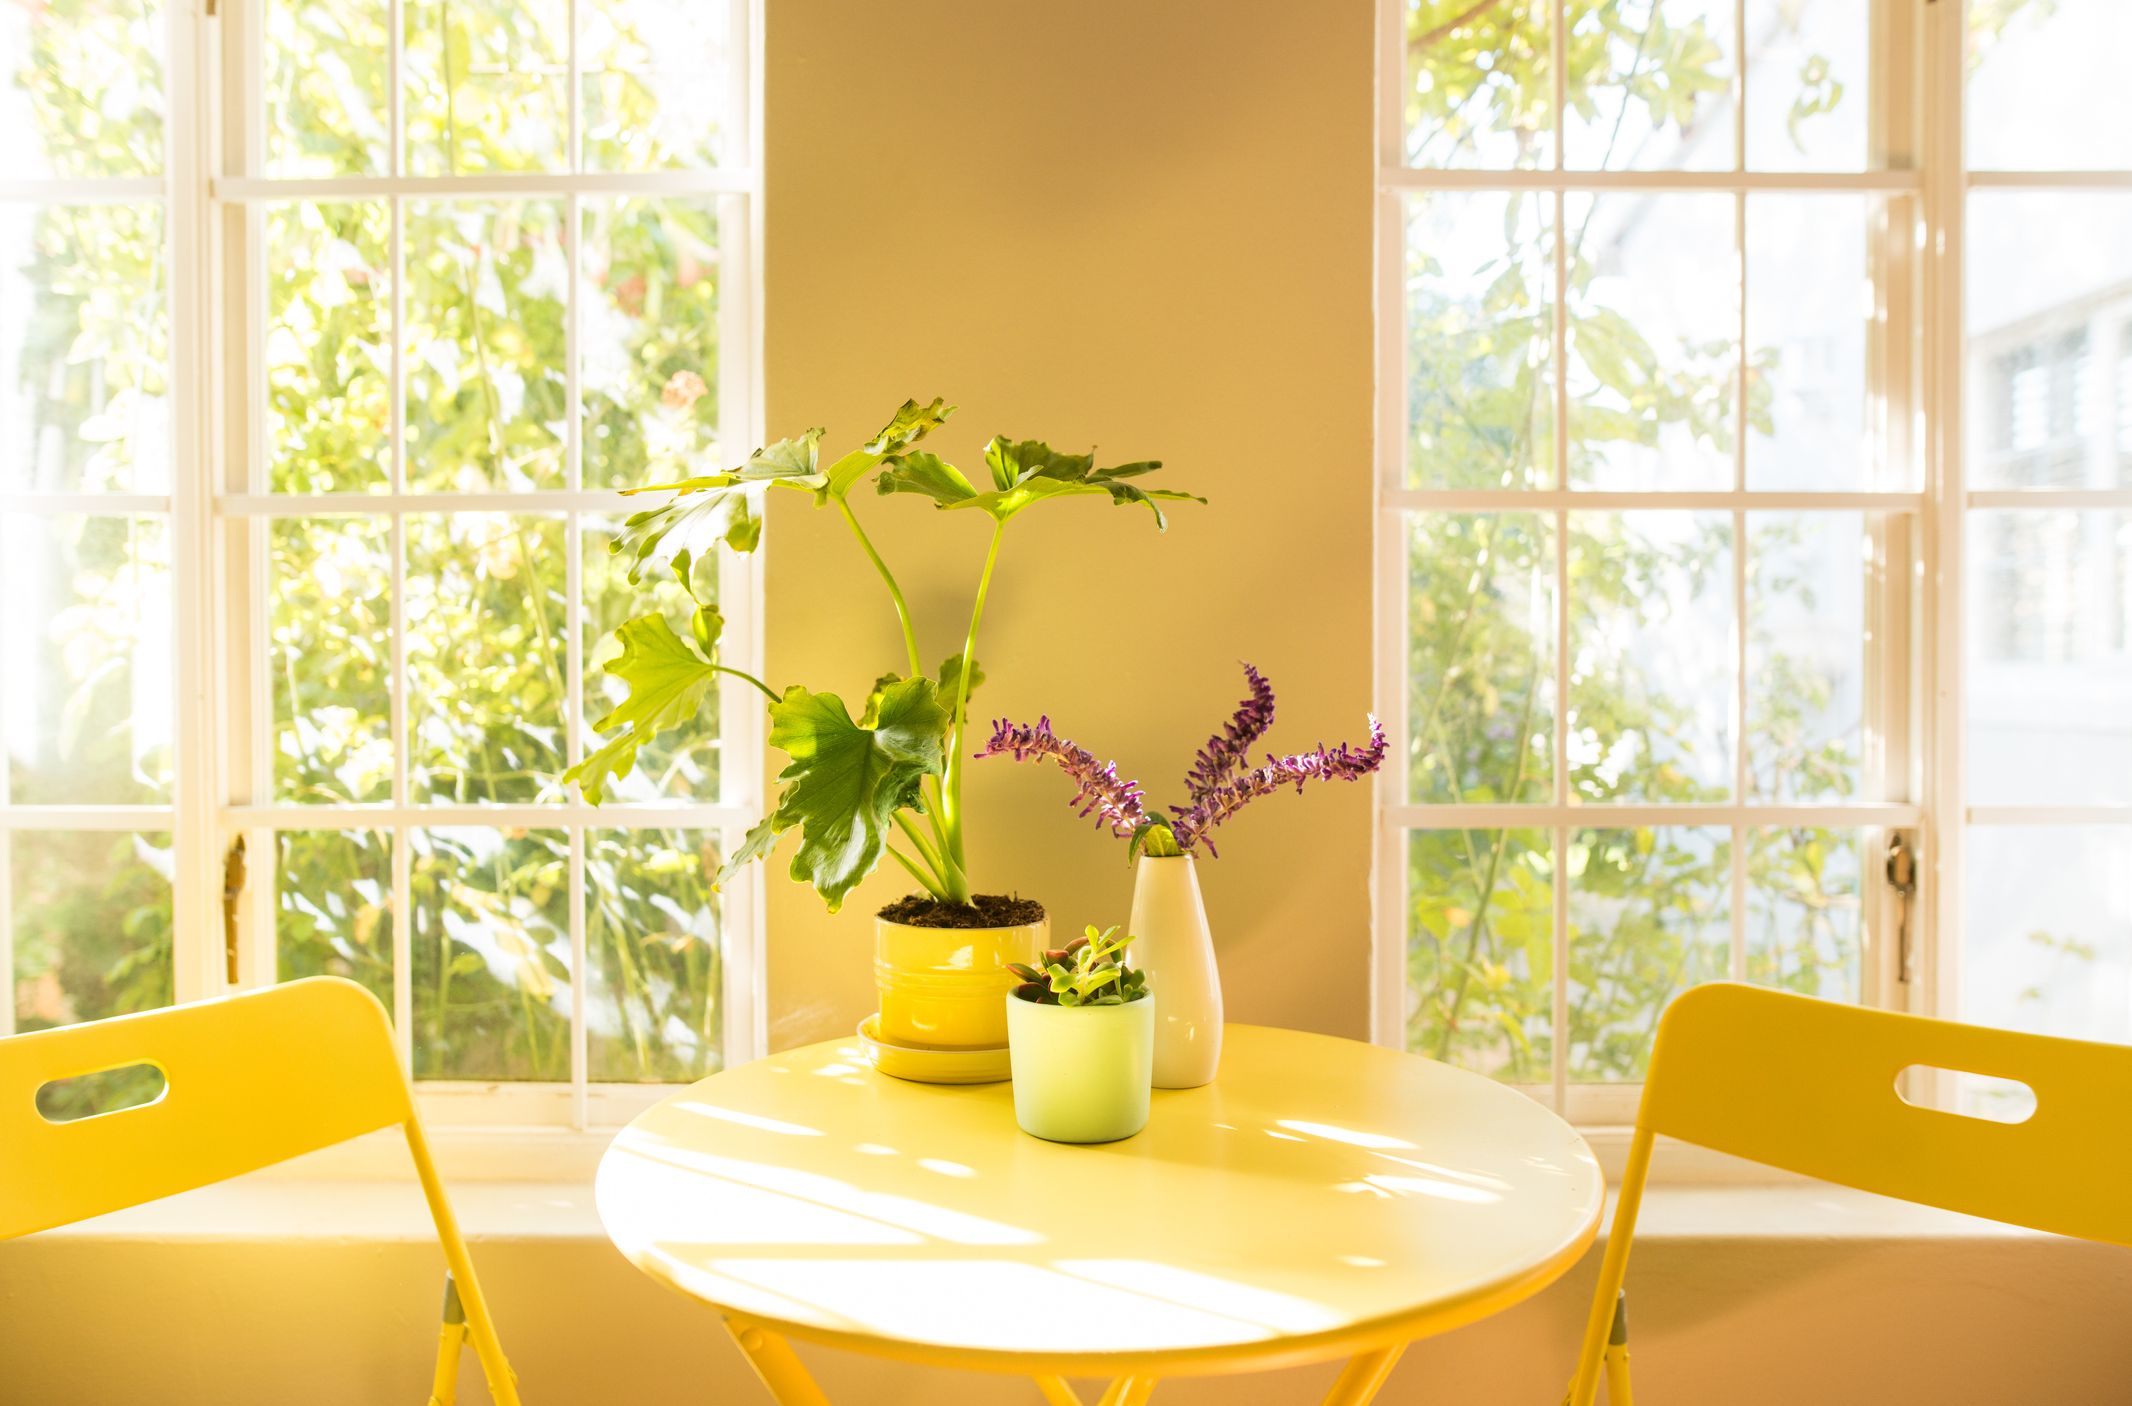 8 Benefits Of Indoor Plants How Houseplants Improve Your Health,Two Bedroom Small 2 Bedroom Apartment Design